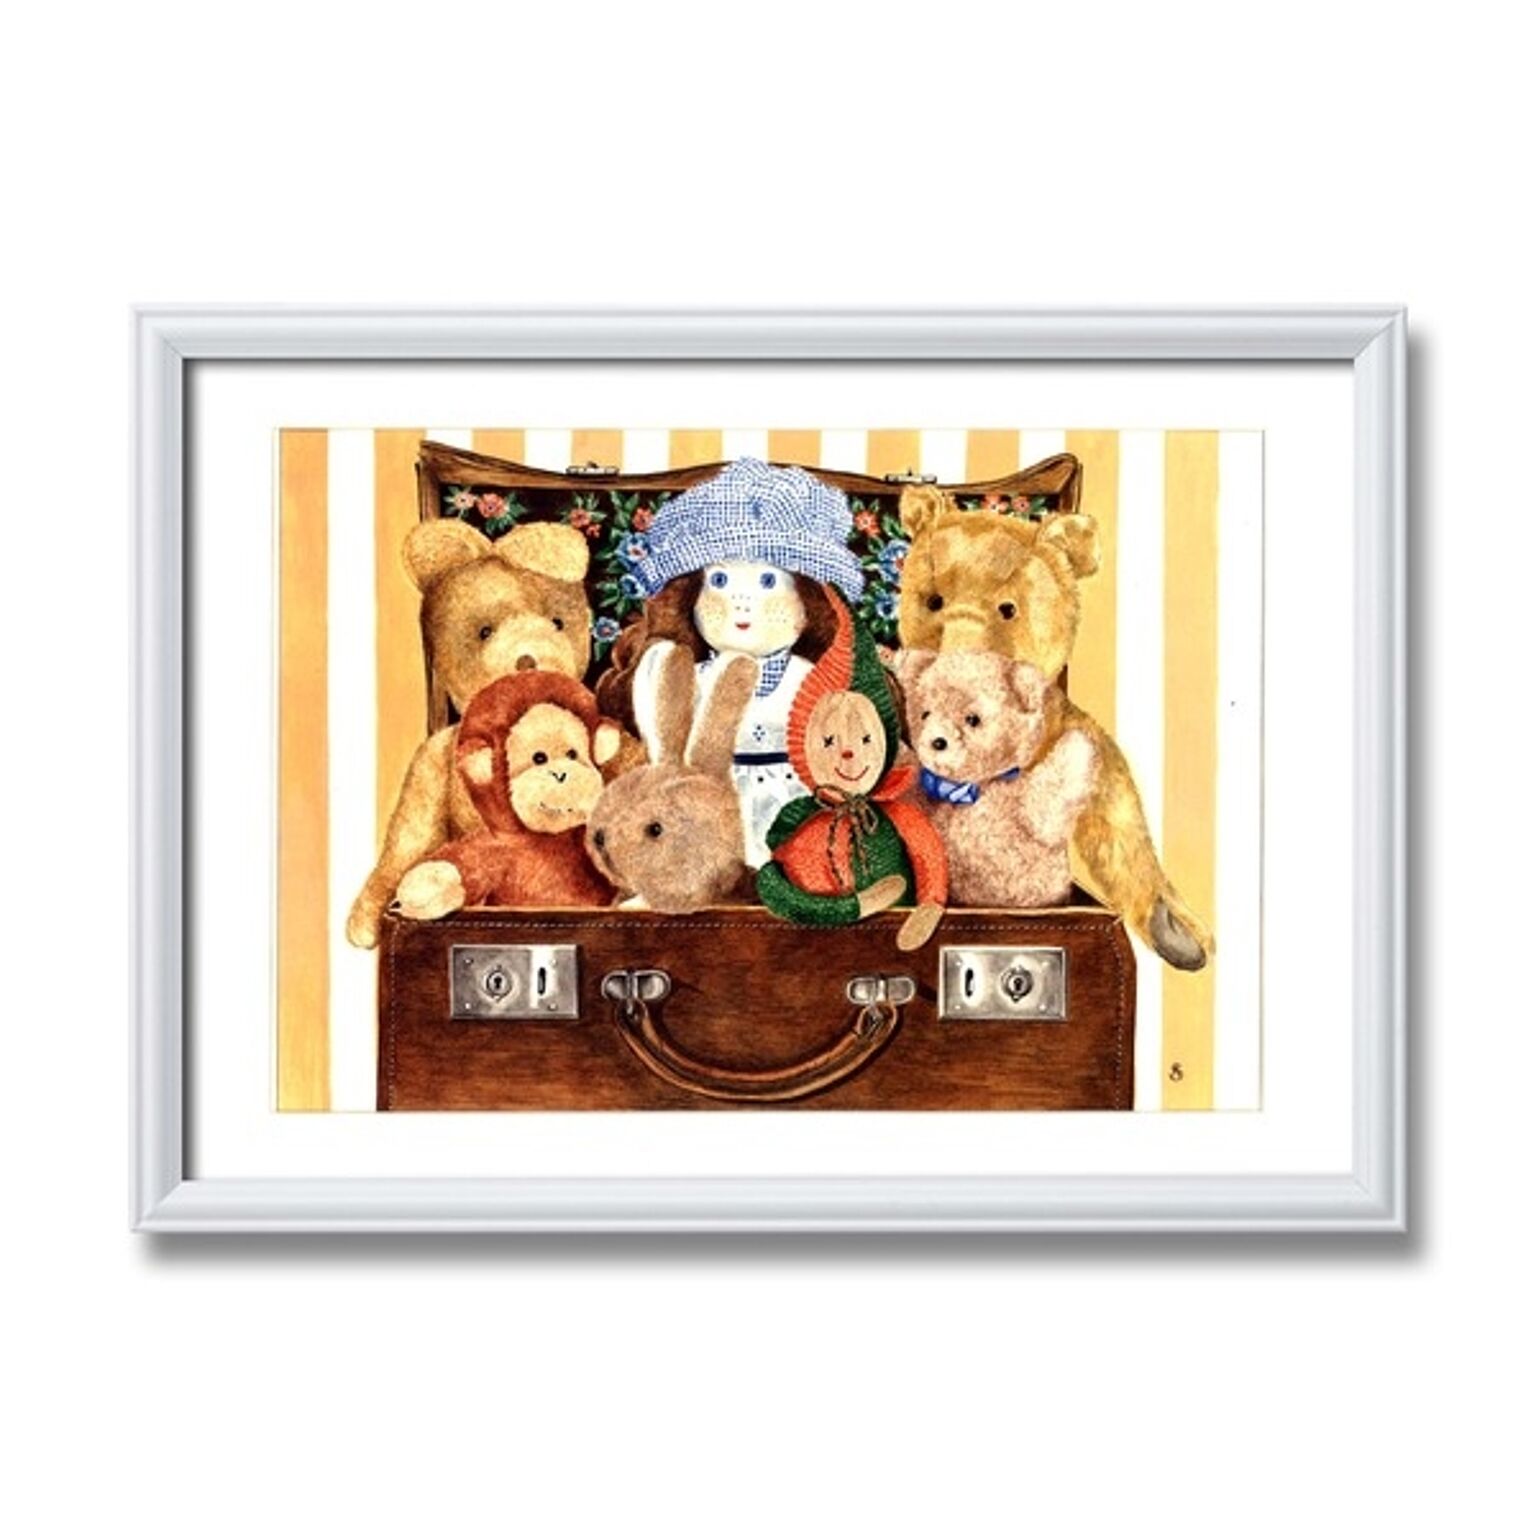 アンジェラ・シマンドソン絵画額■白いフレーム・人形の絵・風景画「スーツケース」